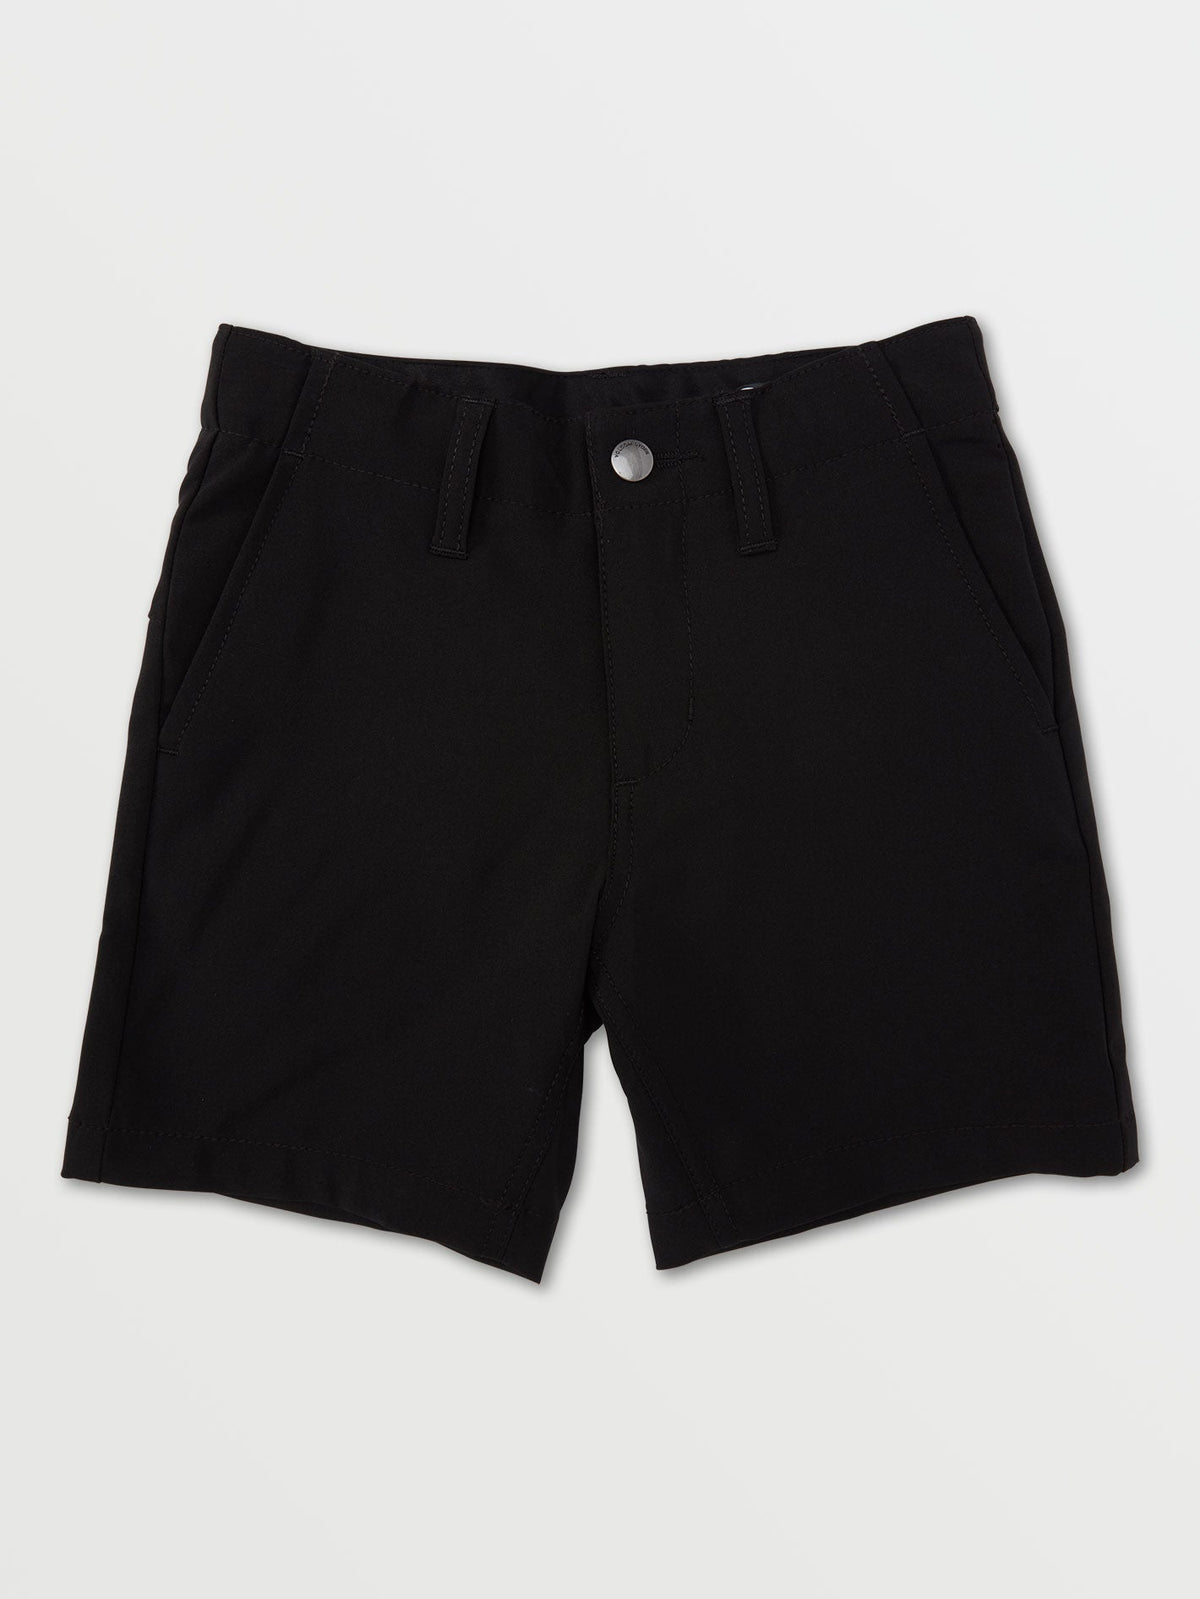 Volcom Kerosene Hybrid Boys Shorts (Age 2-7) Black